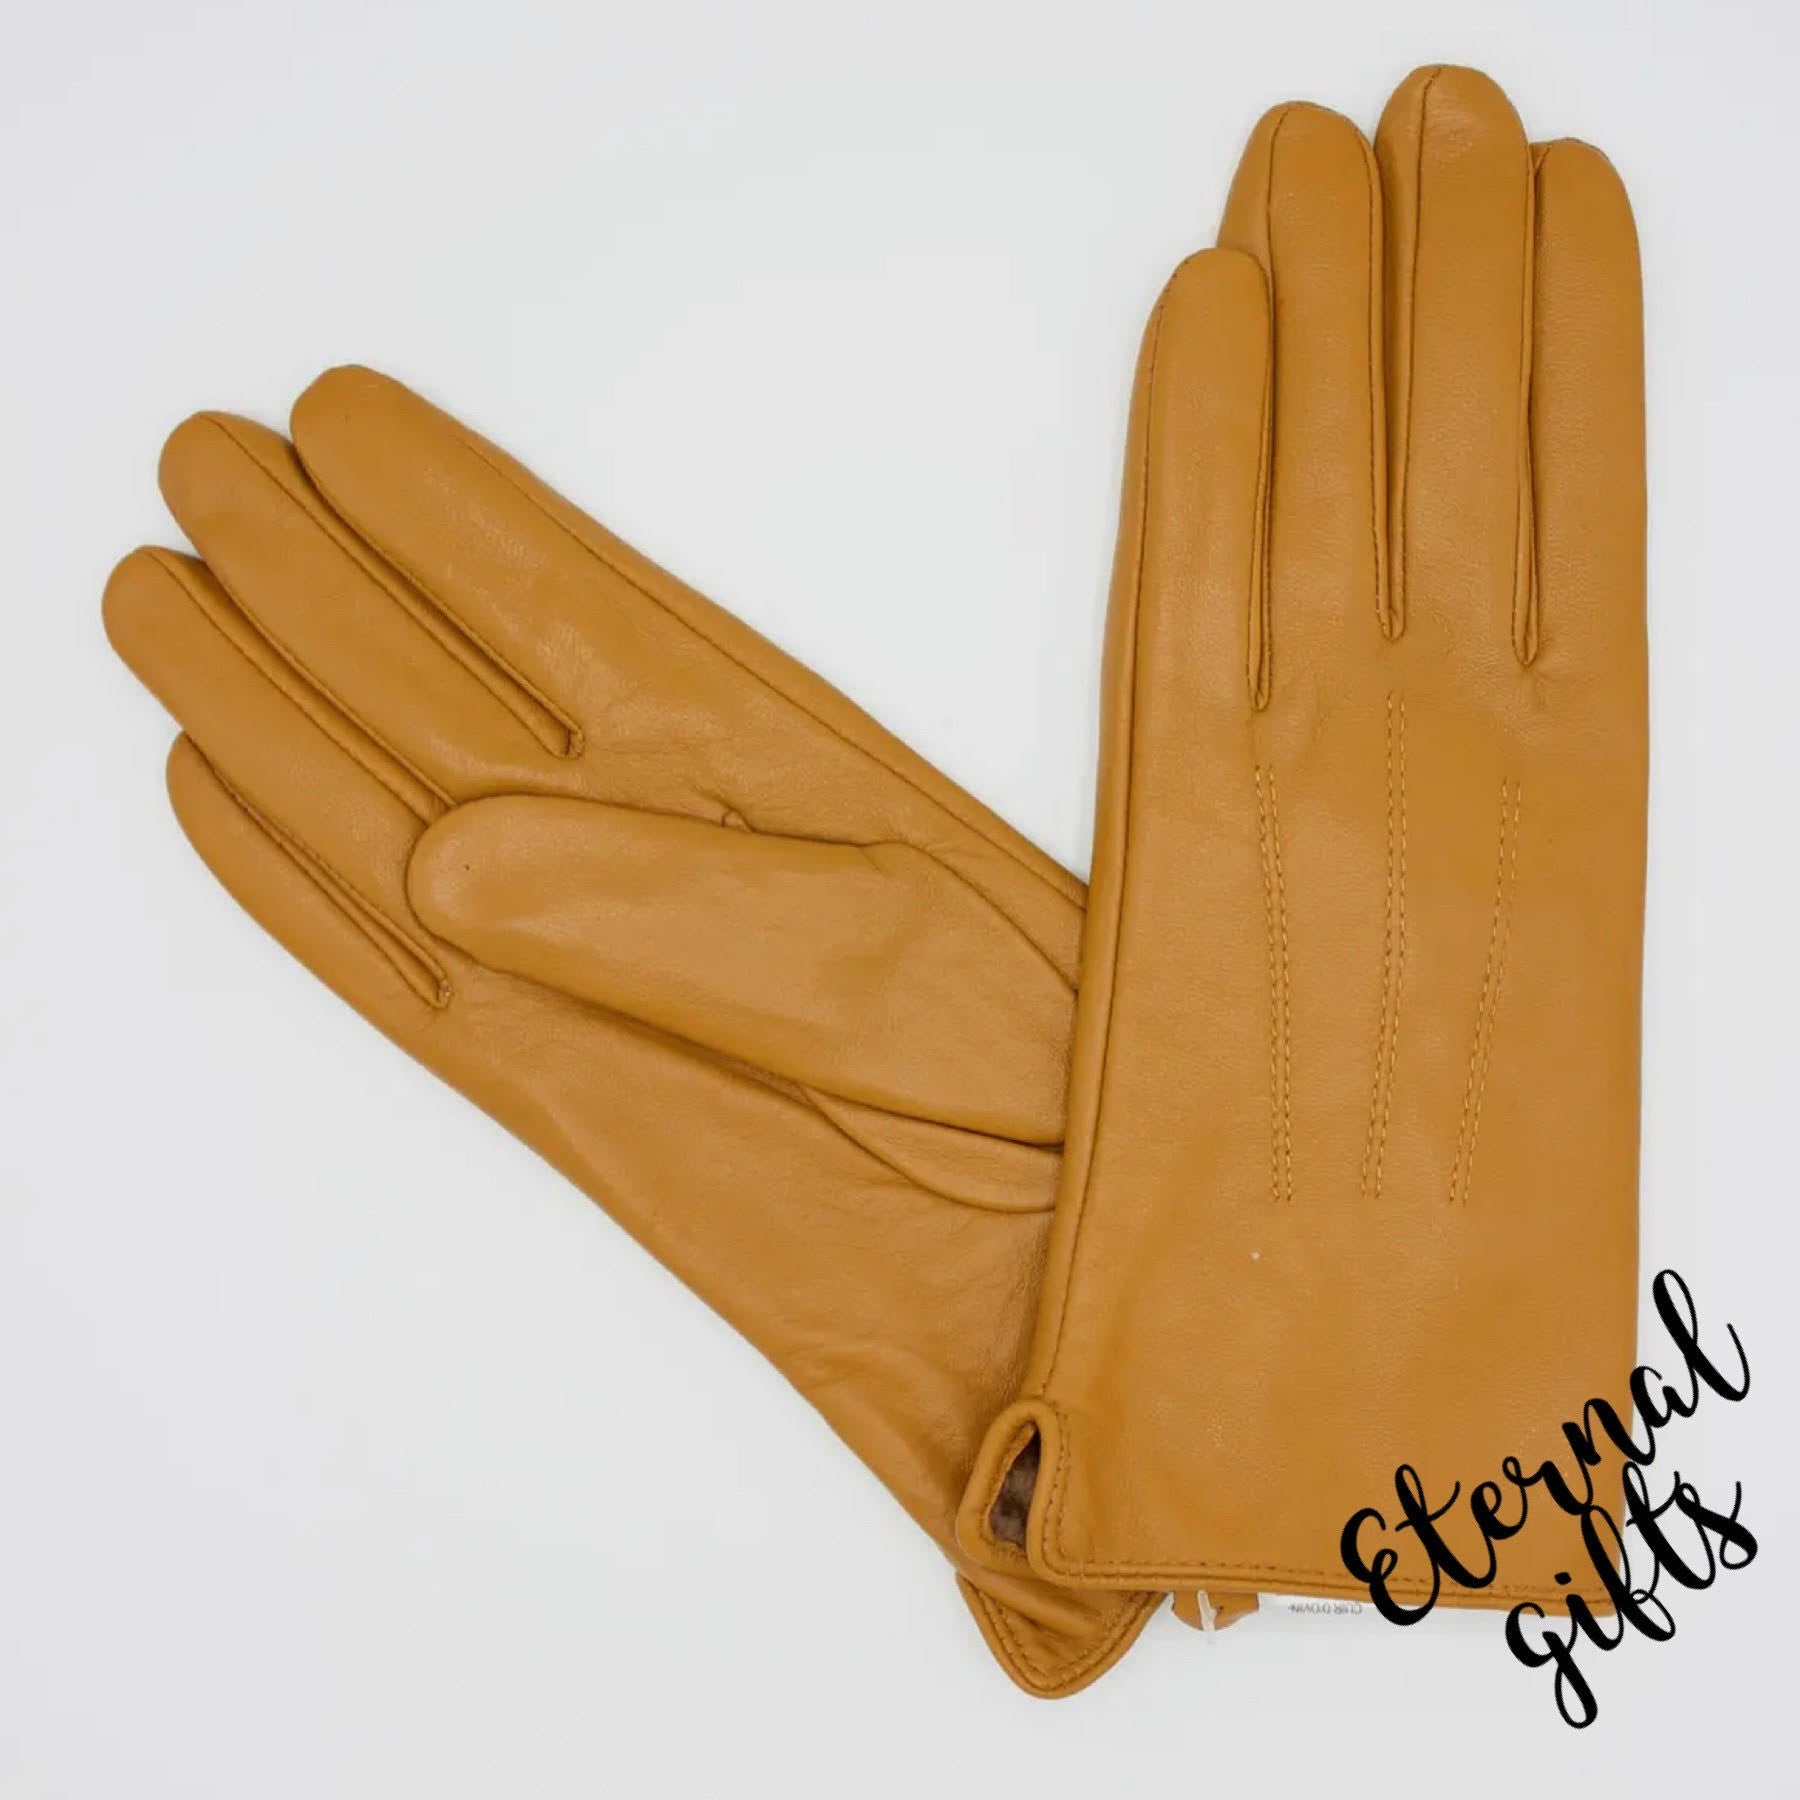 Women's Fleece Lined Leather Gloves - Mustard